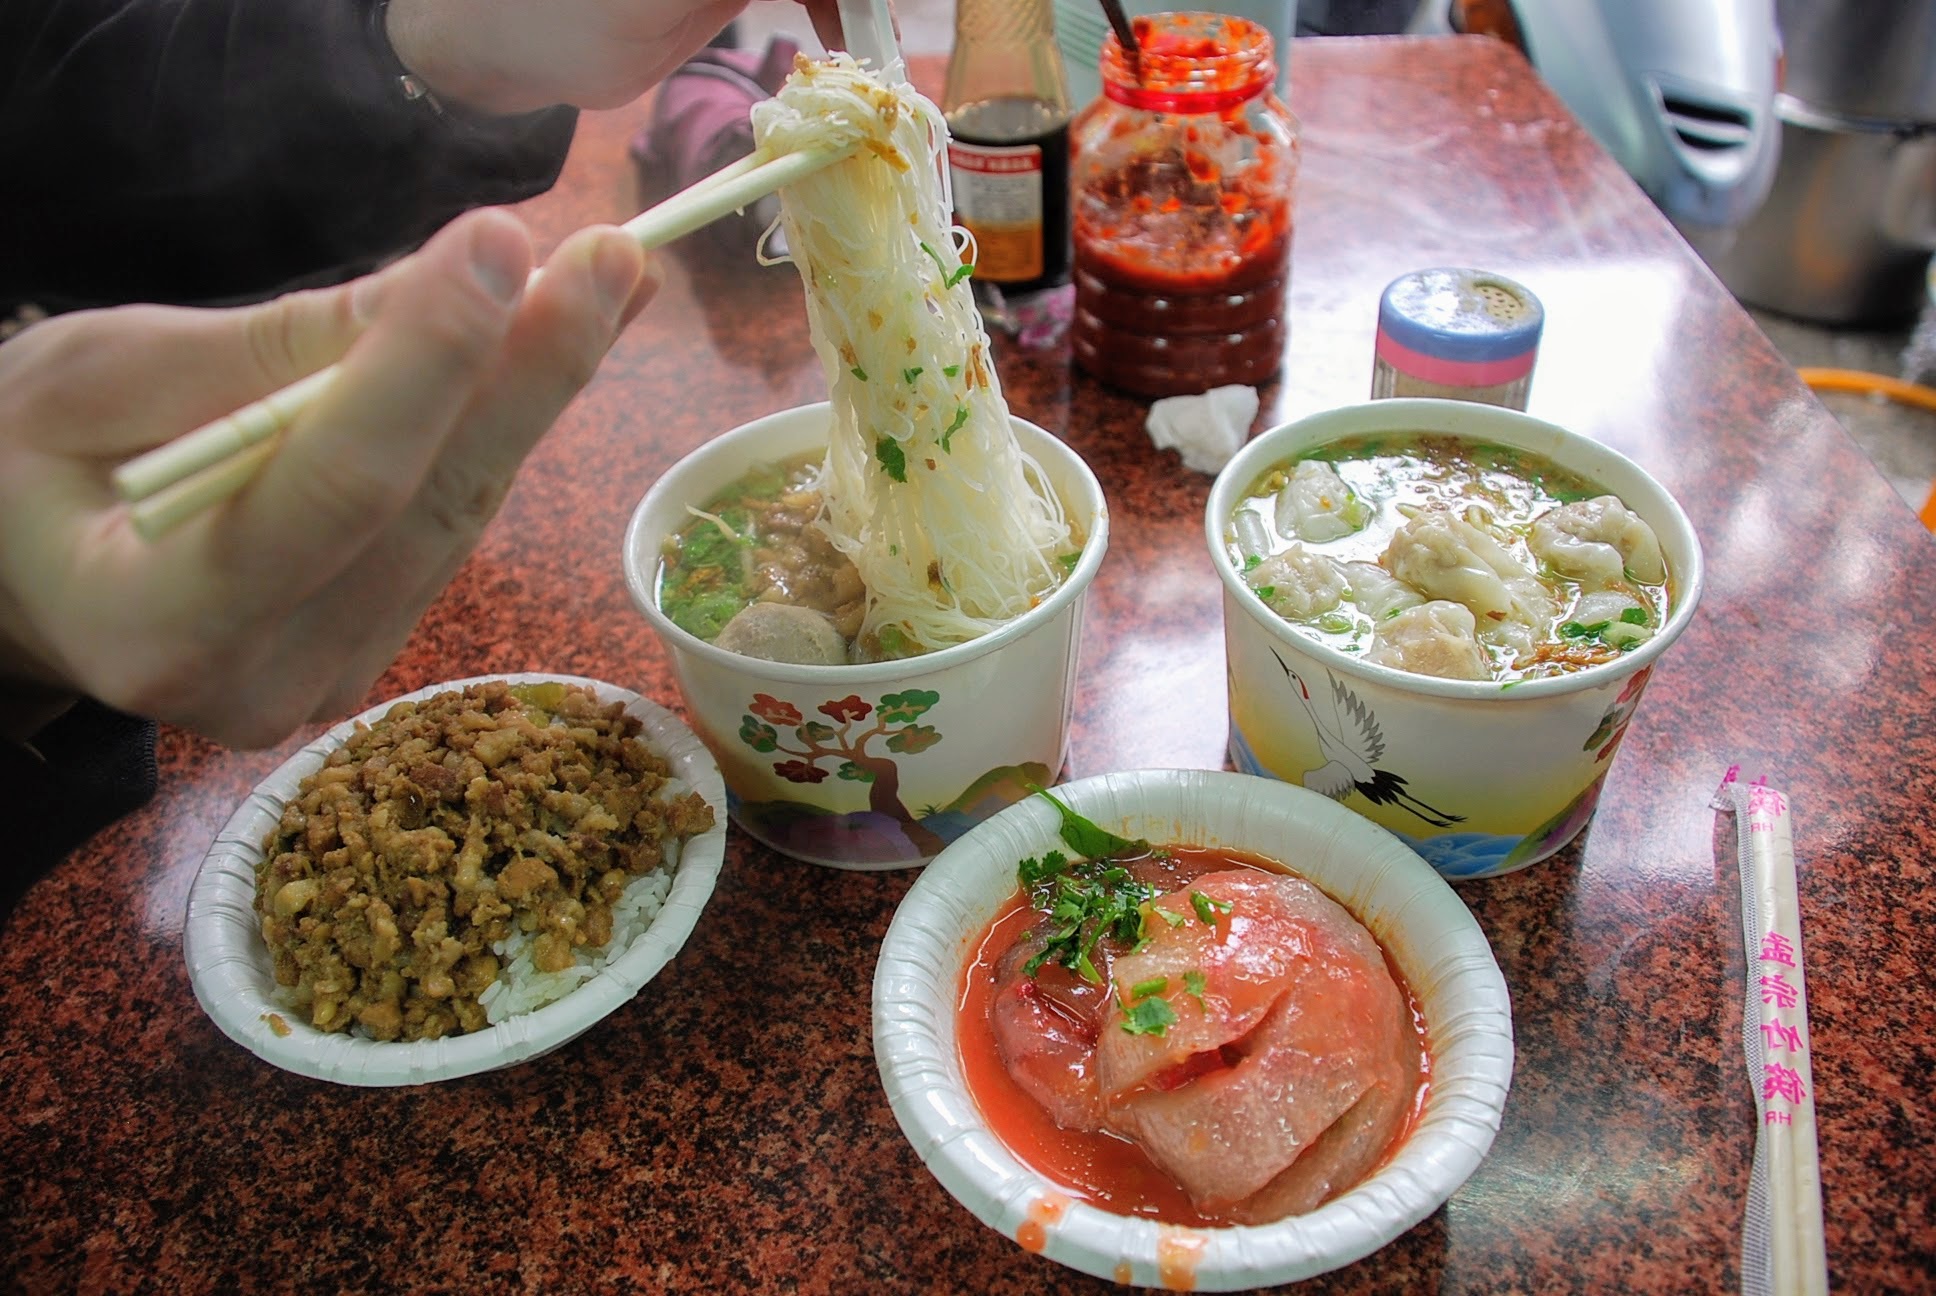 Tipikus tajvani utca kifőzde (street food): tészta, húsgombóc, húsos rizs és az az összevágott bigyó, amit soha nem tudtam megkedvelni. Többen kérdezték, mi azt, de annyira nem kedveltem, hogy már arra sem emlékszem, miből készül és mi van benne. 